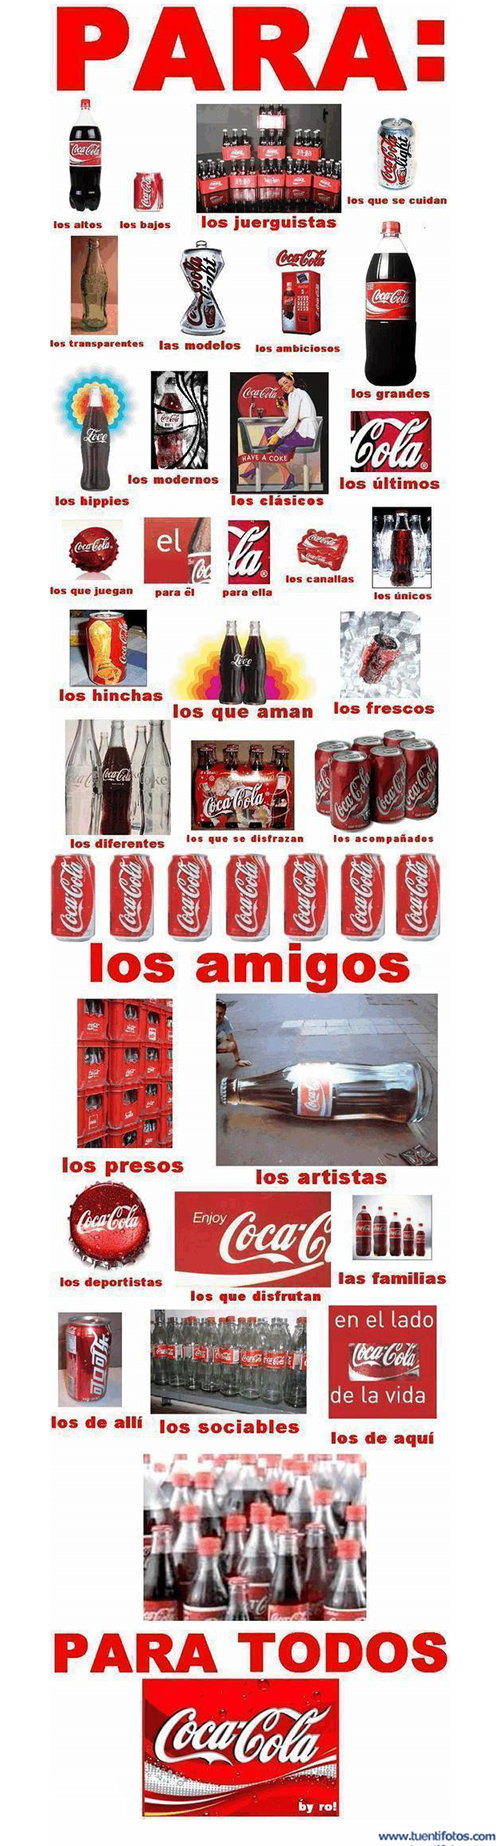 Objetos de Cocacola Somos Todos